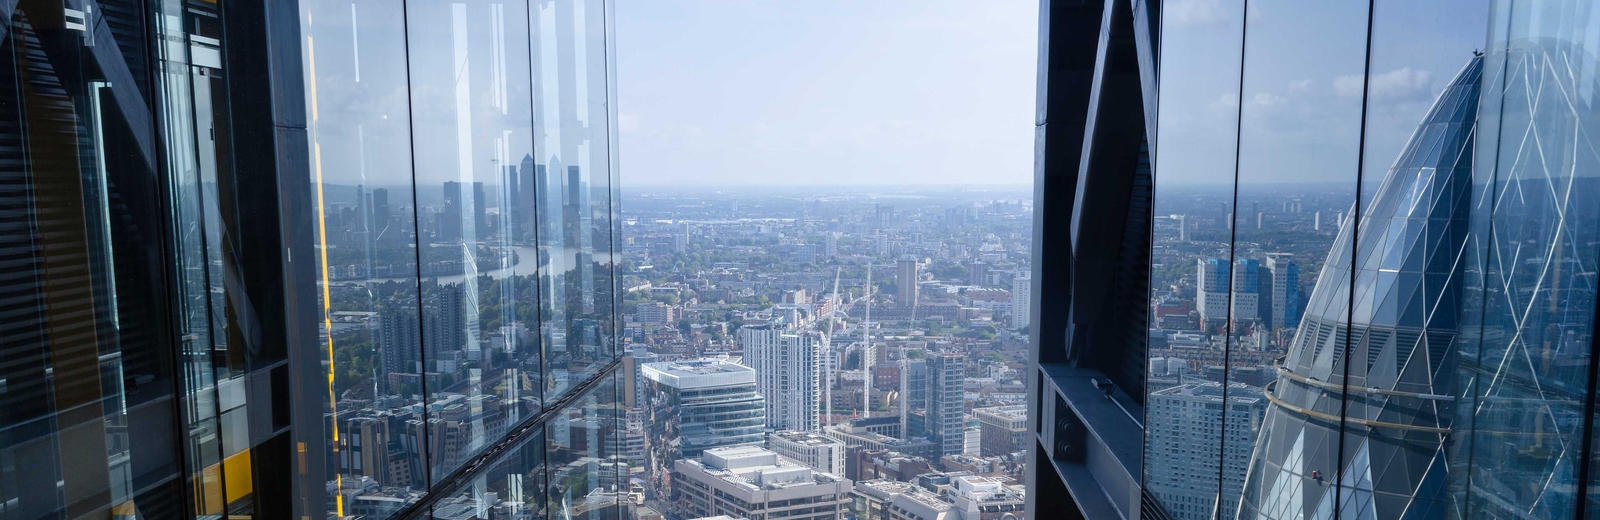 A Gherkin reflection in London buildings 